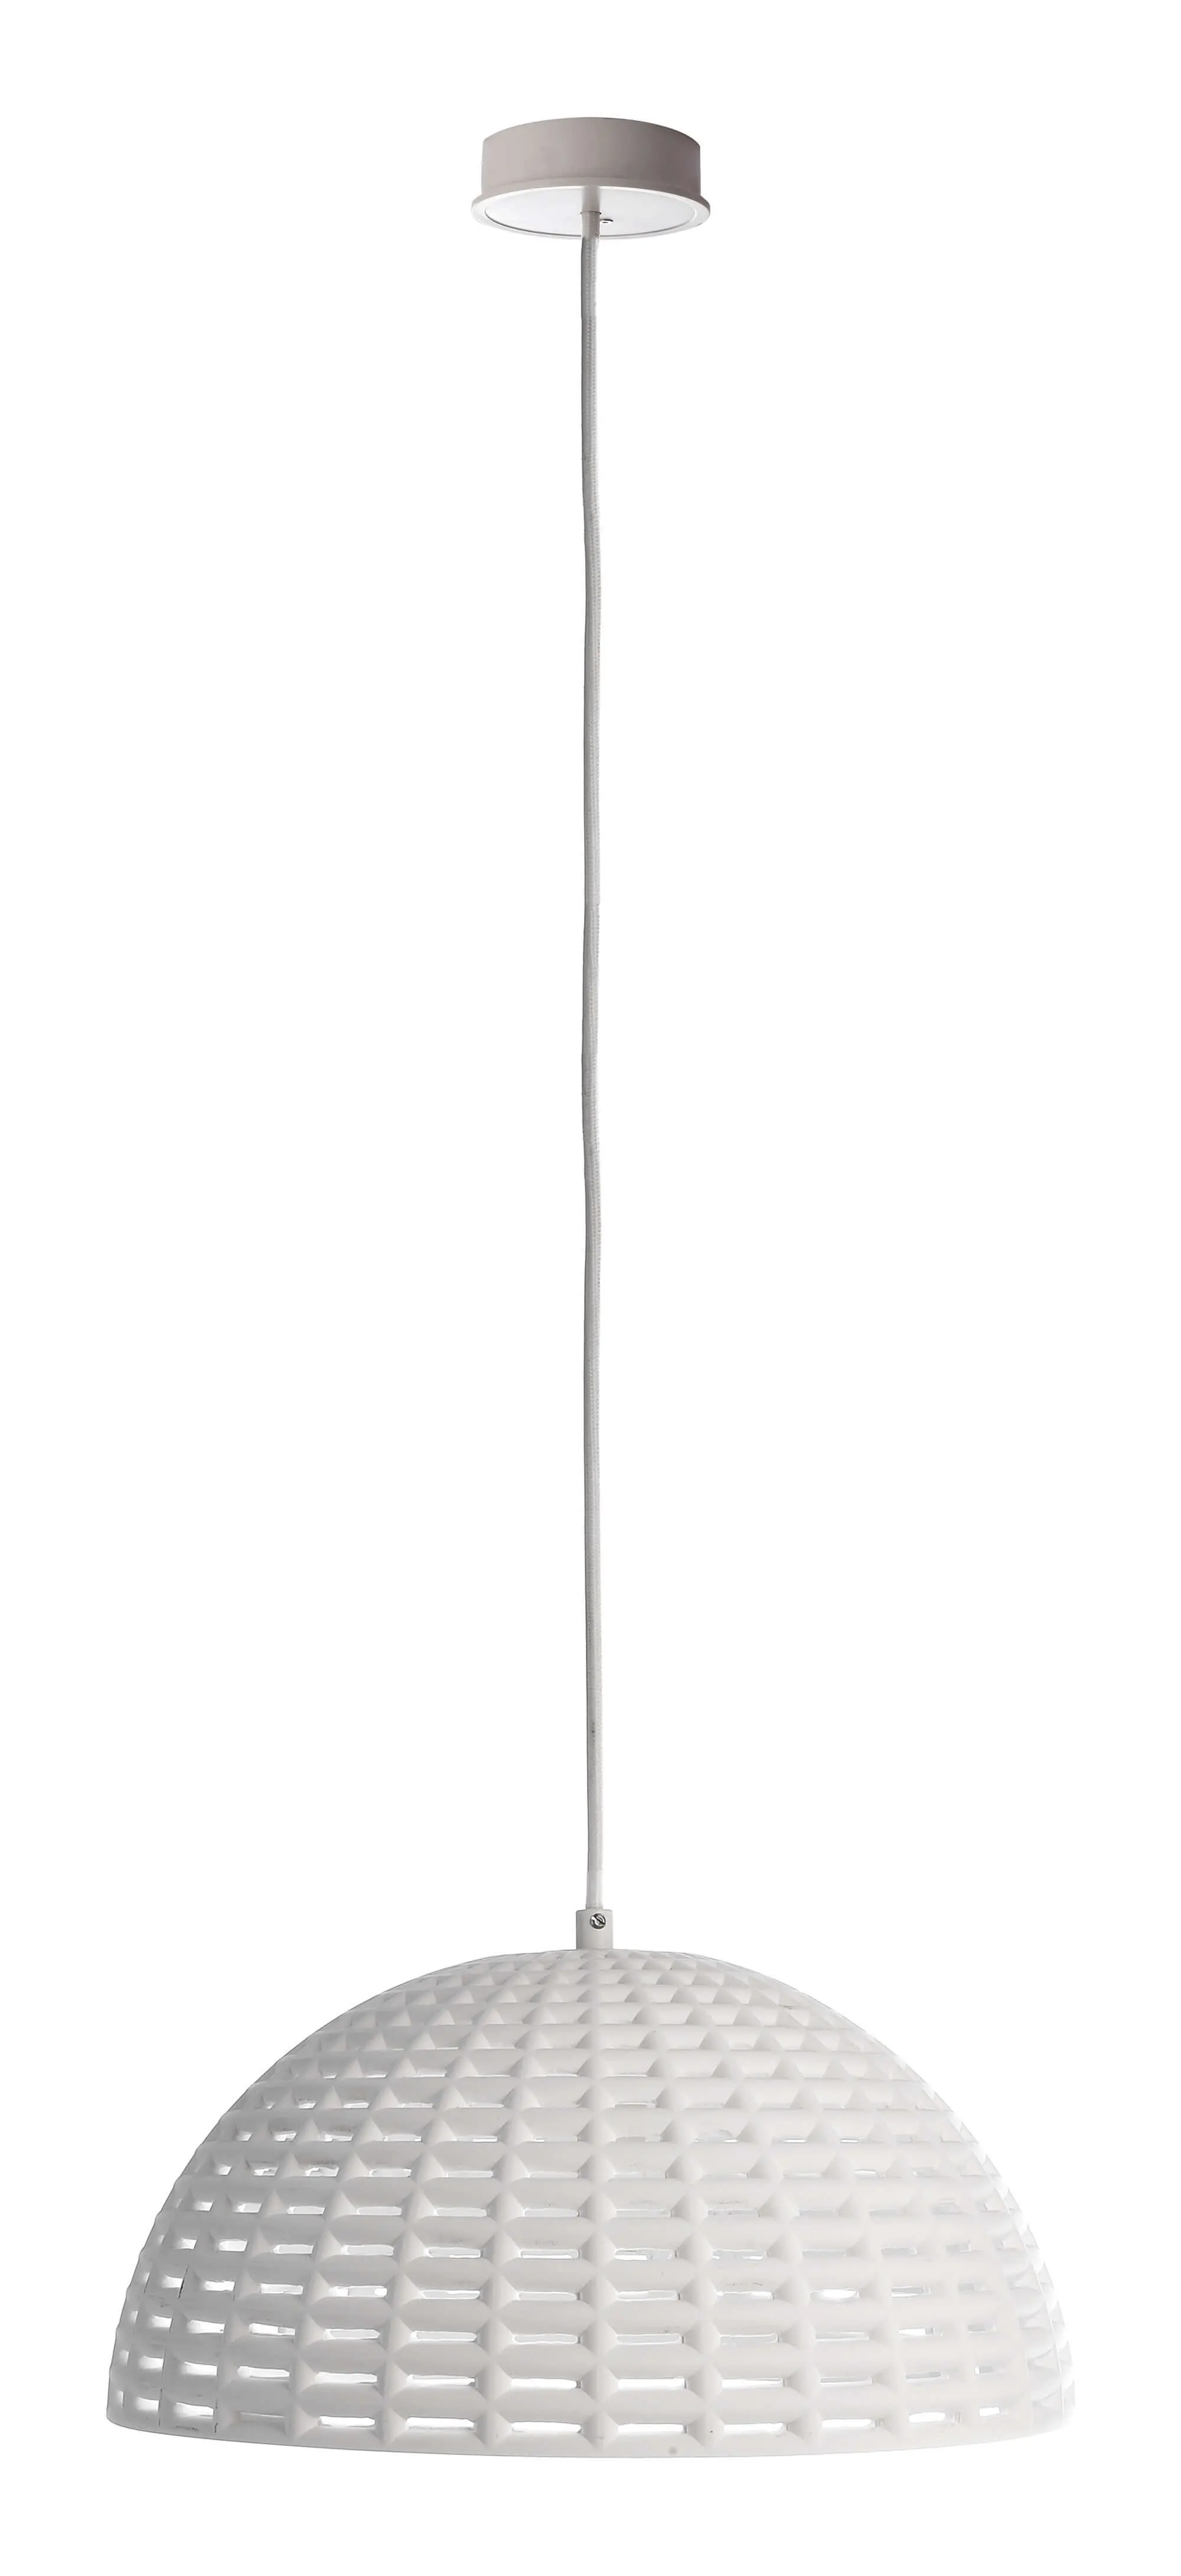 Hängeleuchte Basket II aus Gips in weiß, rund, Ø 34,4cm